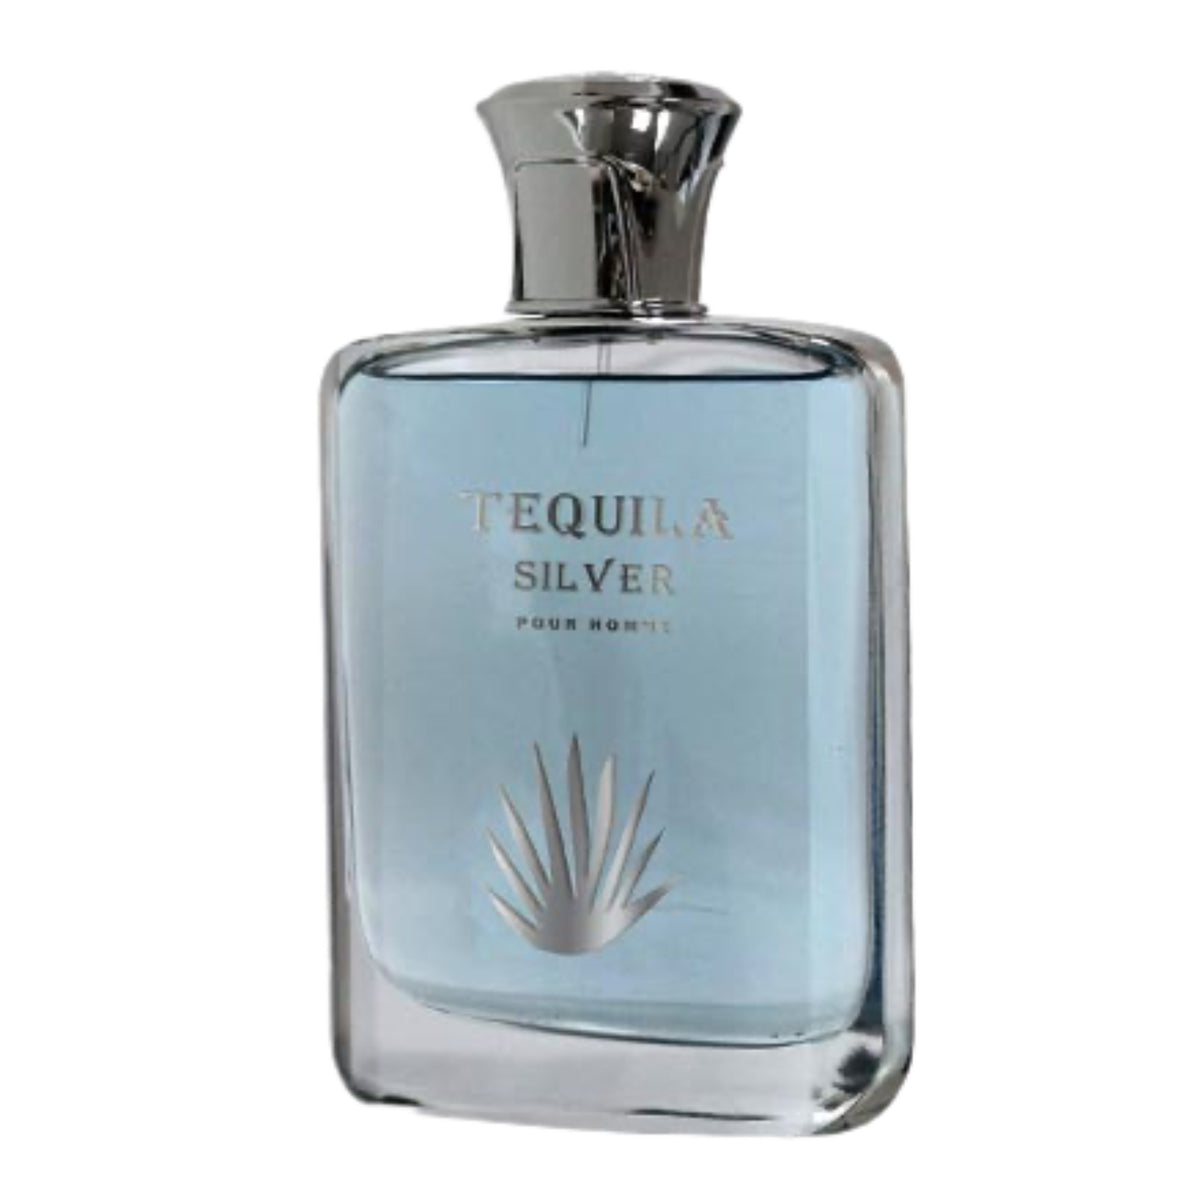 Tequila Bleu Pour Homme for Men Eau de Parfum Spray, 6.8 Ounce